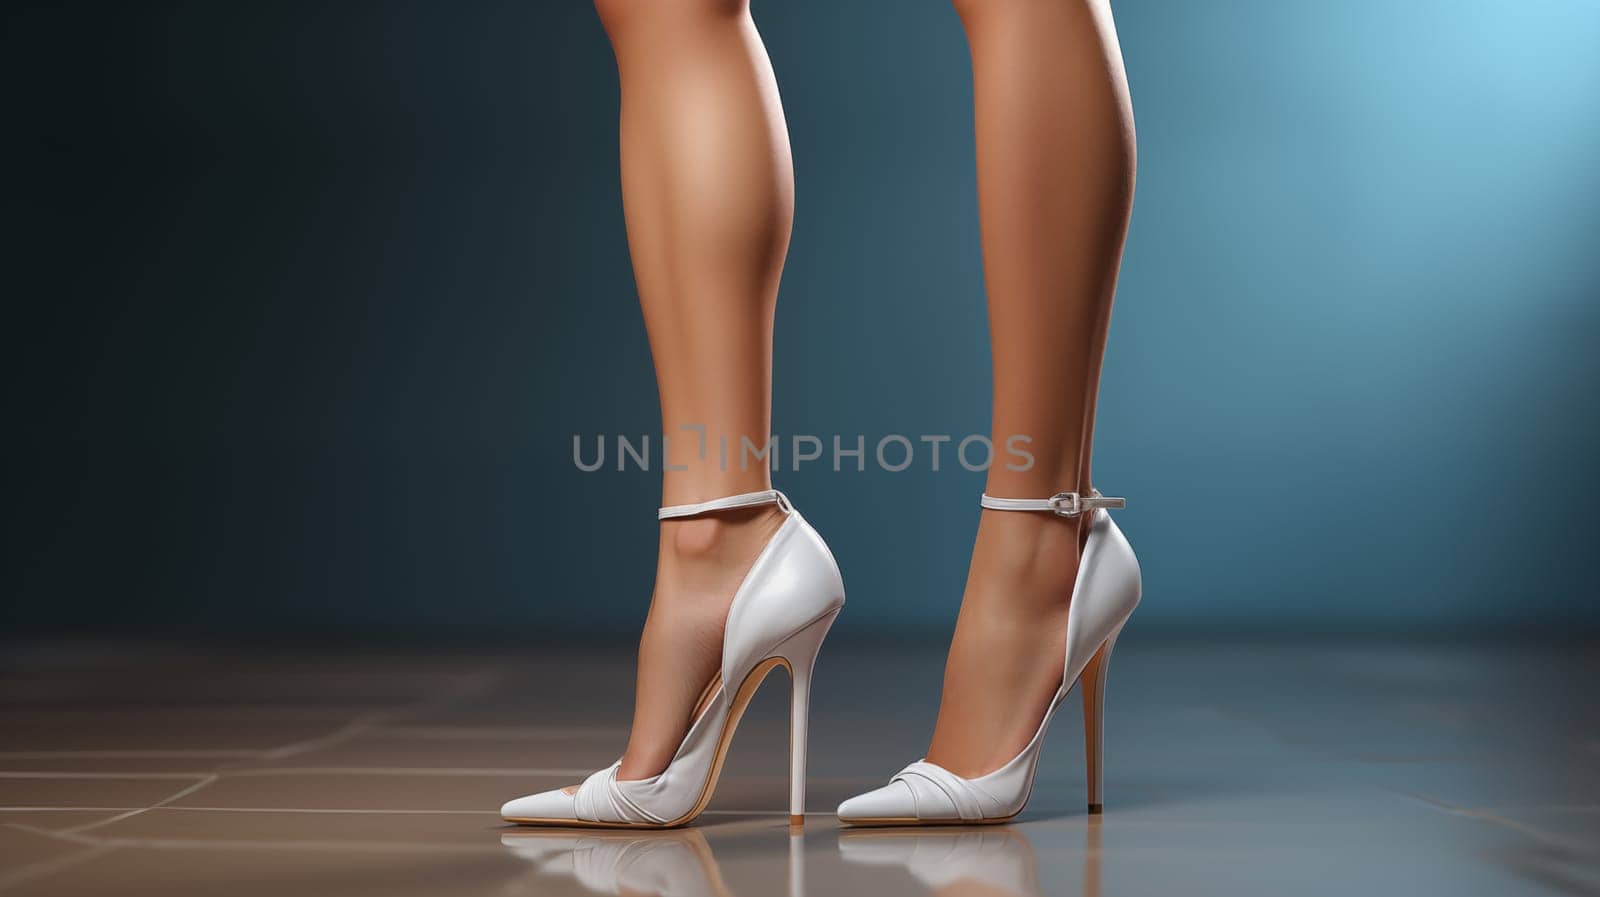 Sleek white heels adorned on slender legs, against a dark backdrop.